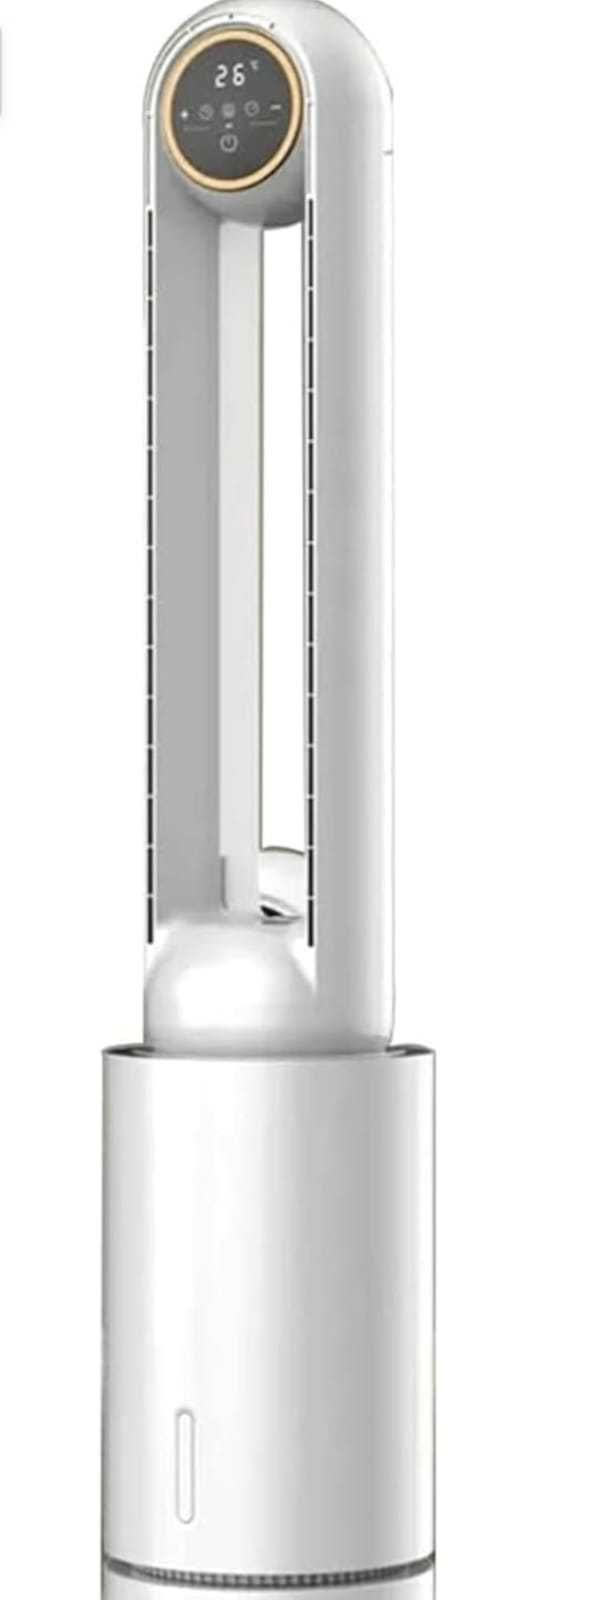 Вентилятор Chigo напольный (безопасный) c водяным охлаждением.